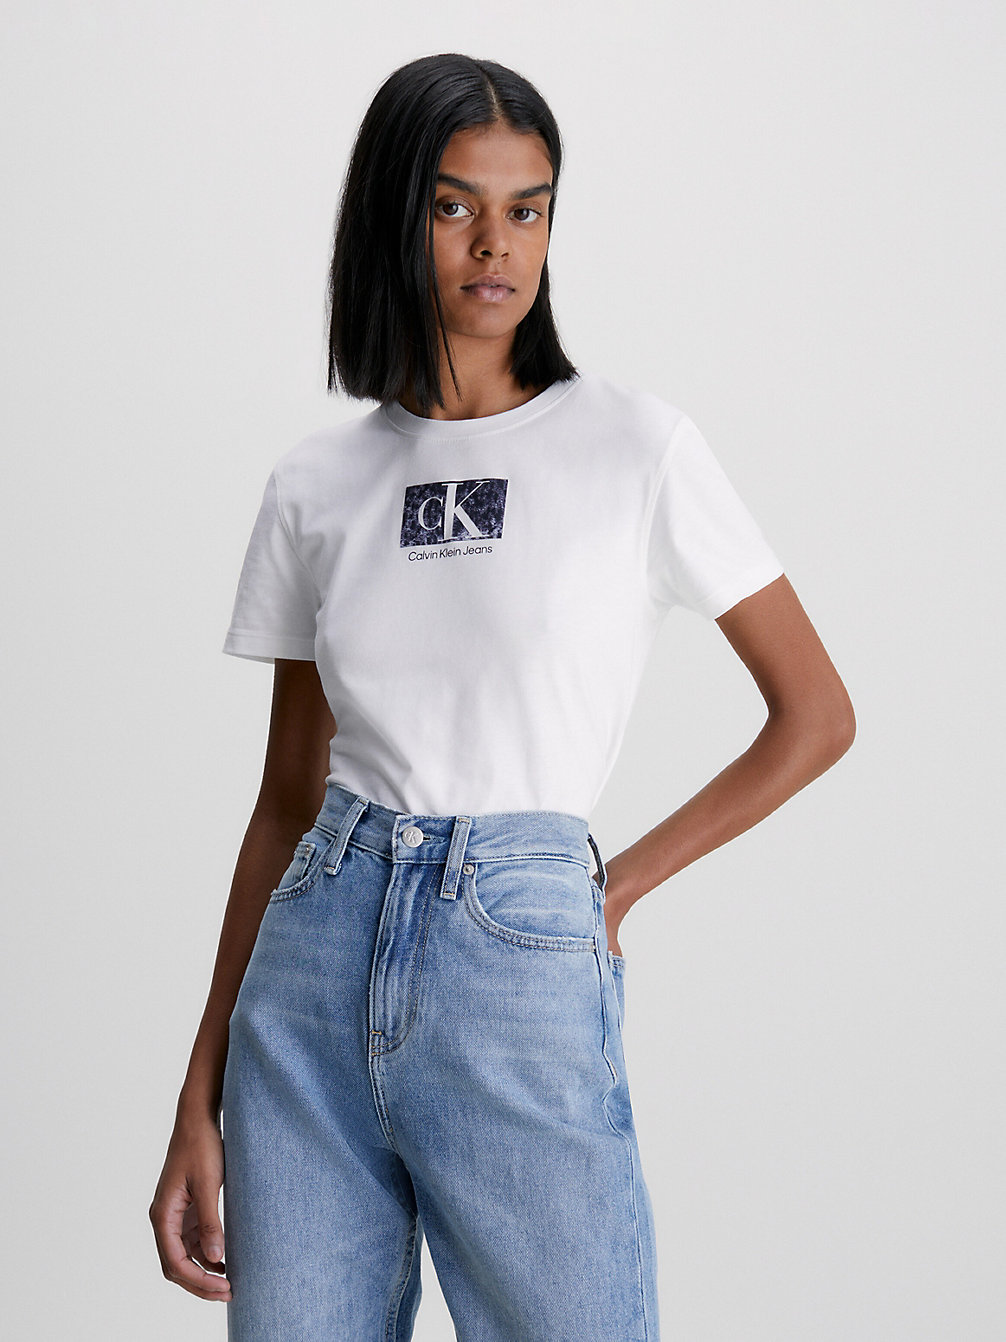 BRIGHT WHITE > Wąski T-Shirt Z Logo Z Bawełny Organicznej > undefined Kobiety - Calvin Klein